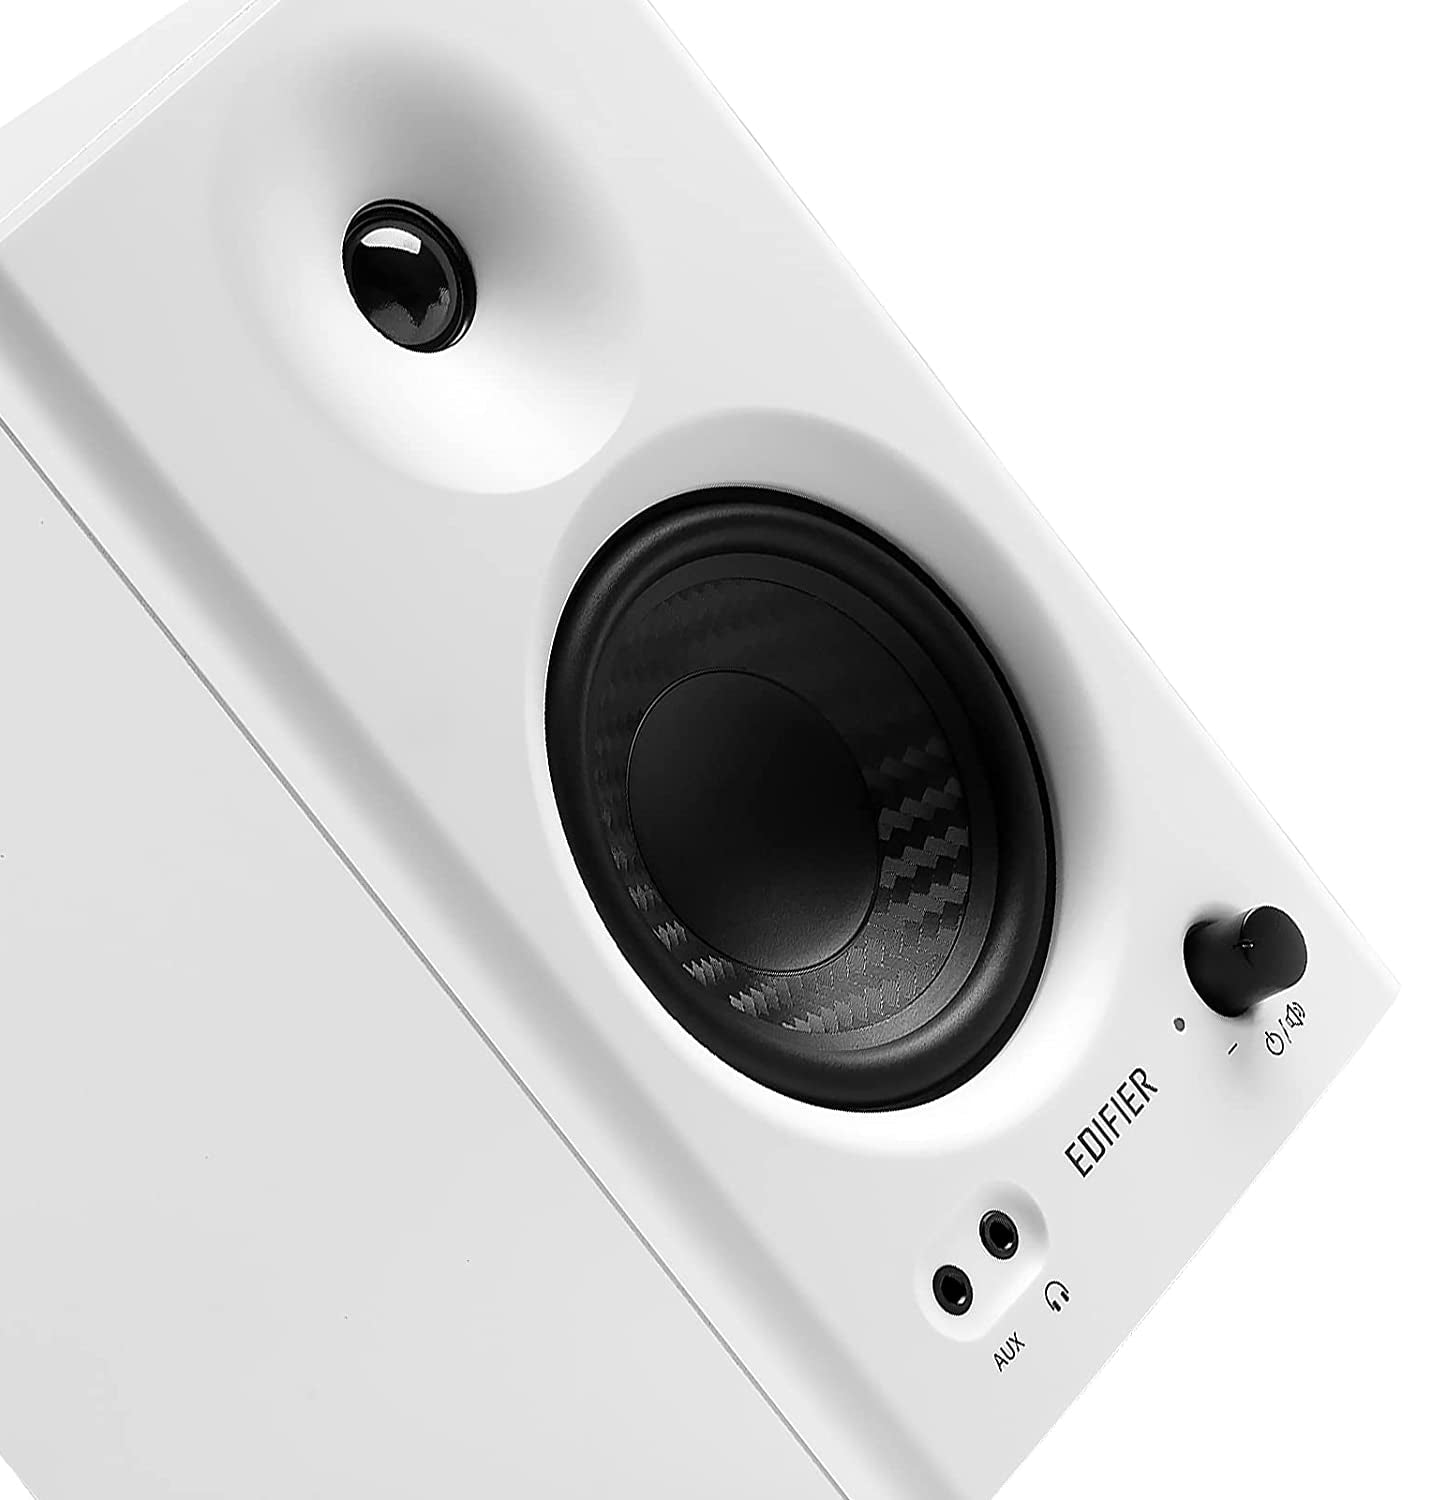 Edifier MR4 2.0 Monitor Reference Speaker System - White